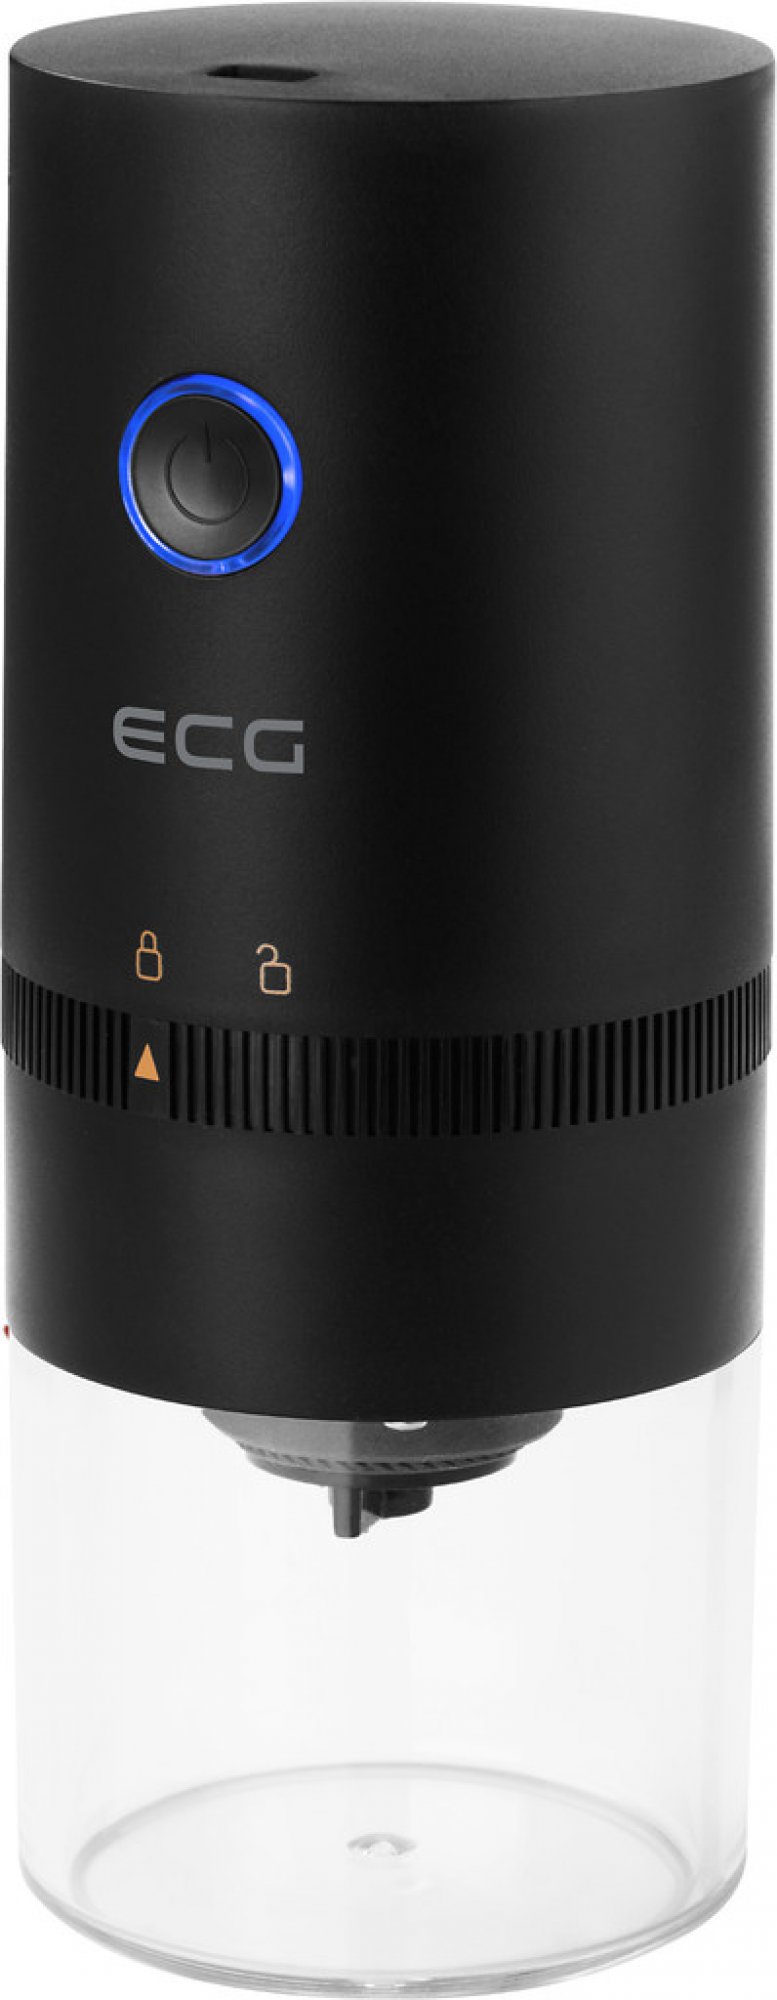 ECG KM 150 Minimo Black Elektrický mlýnek na kávu